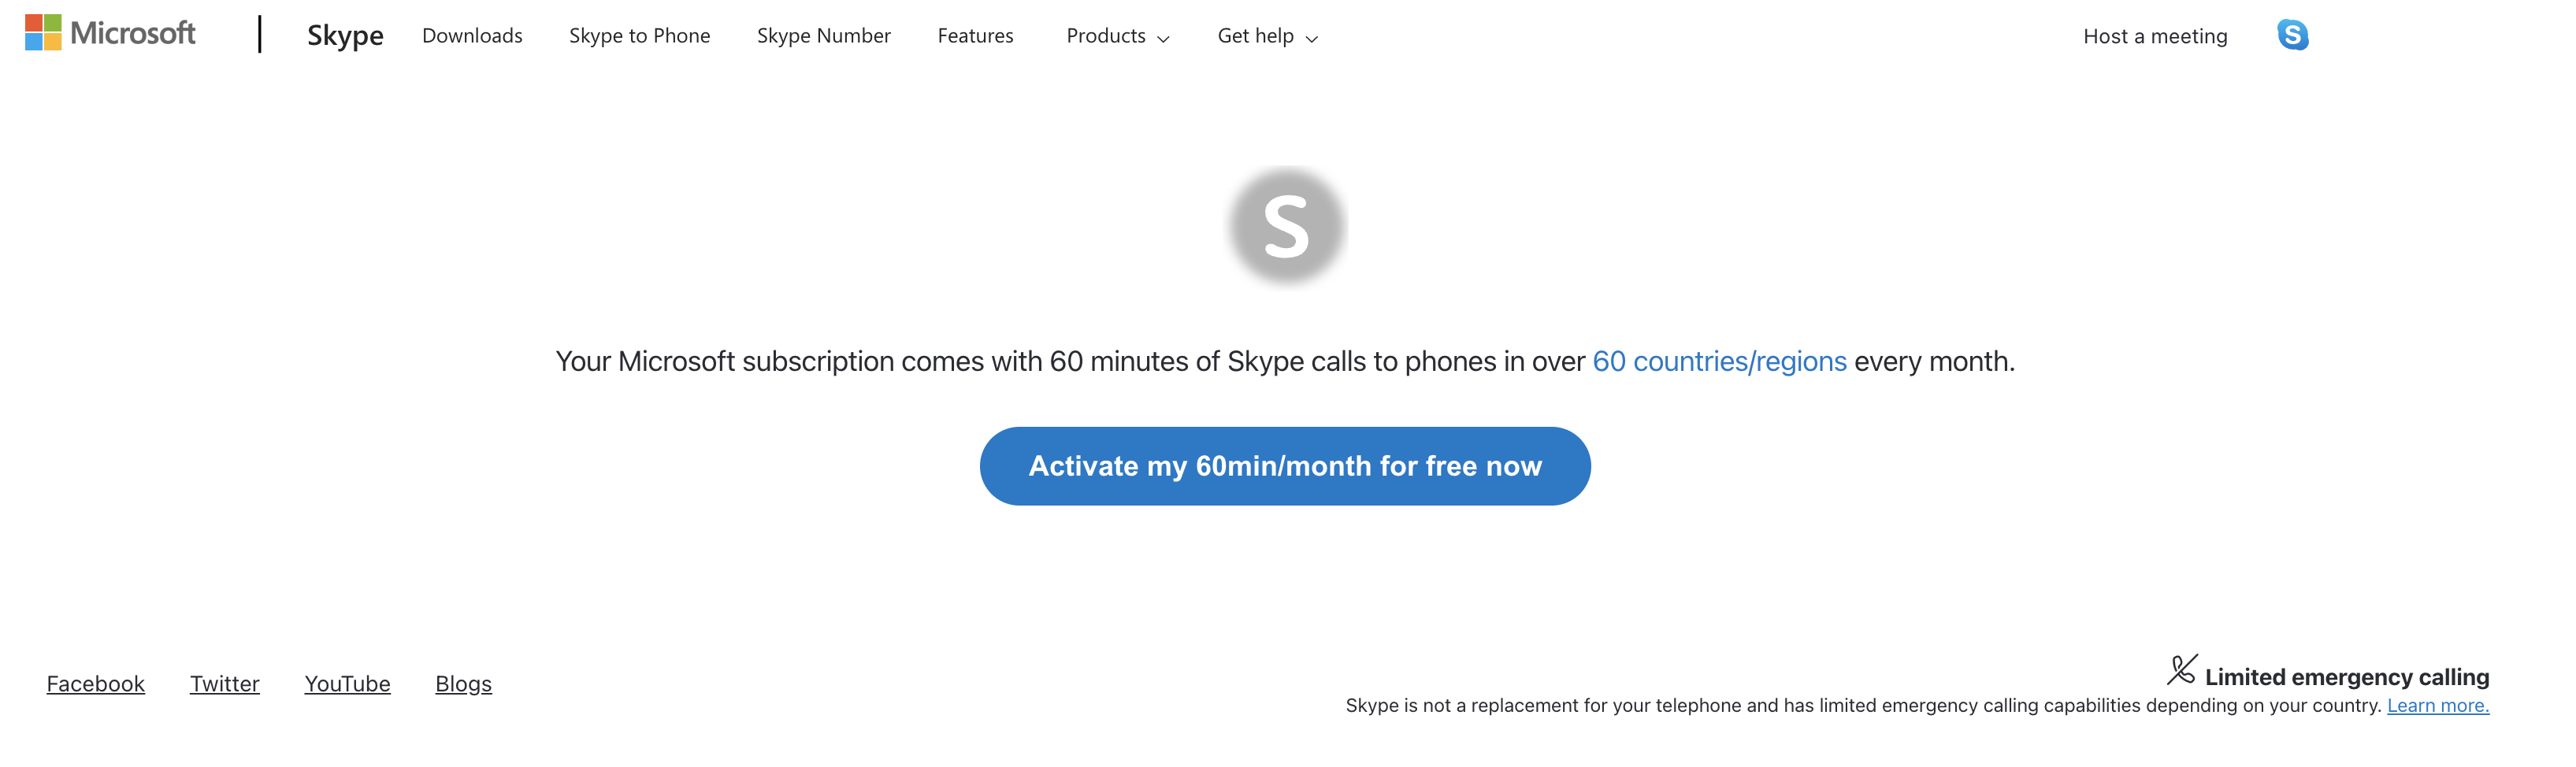 Halaman web untuk mengaktifkan gratis 60 menit dengan Skype